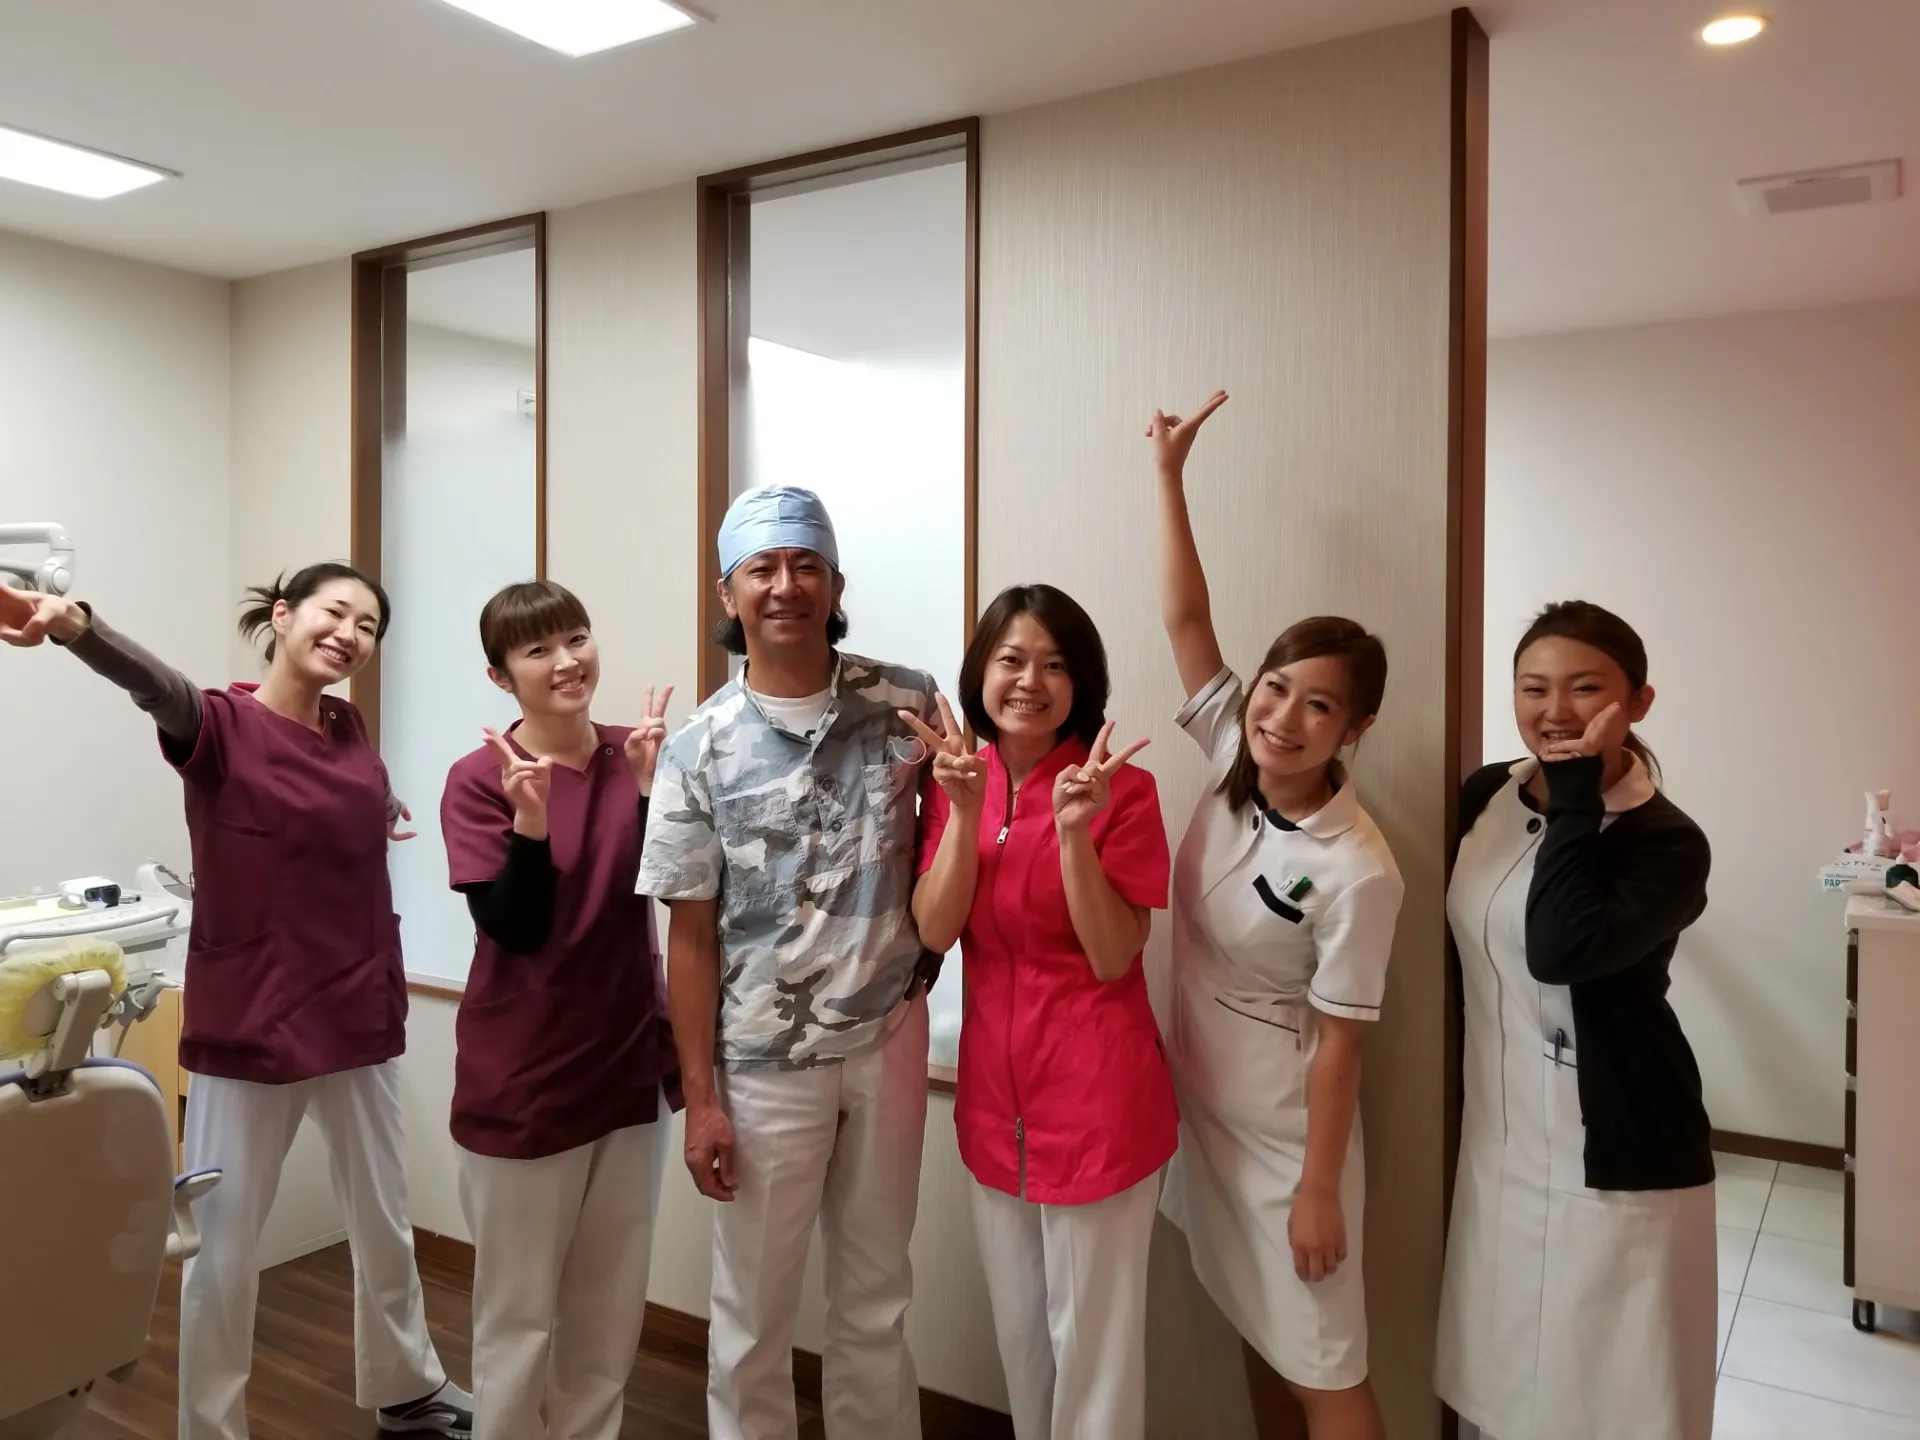 野田市の七光台歯科クリニックでは歯科衛生士を募集しています。